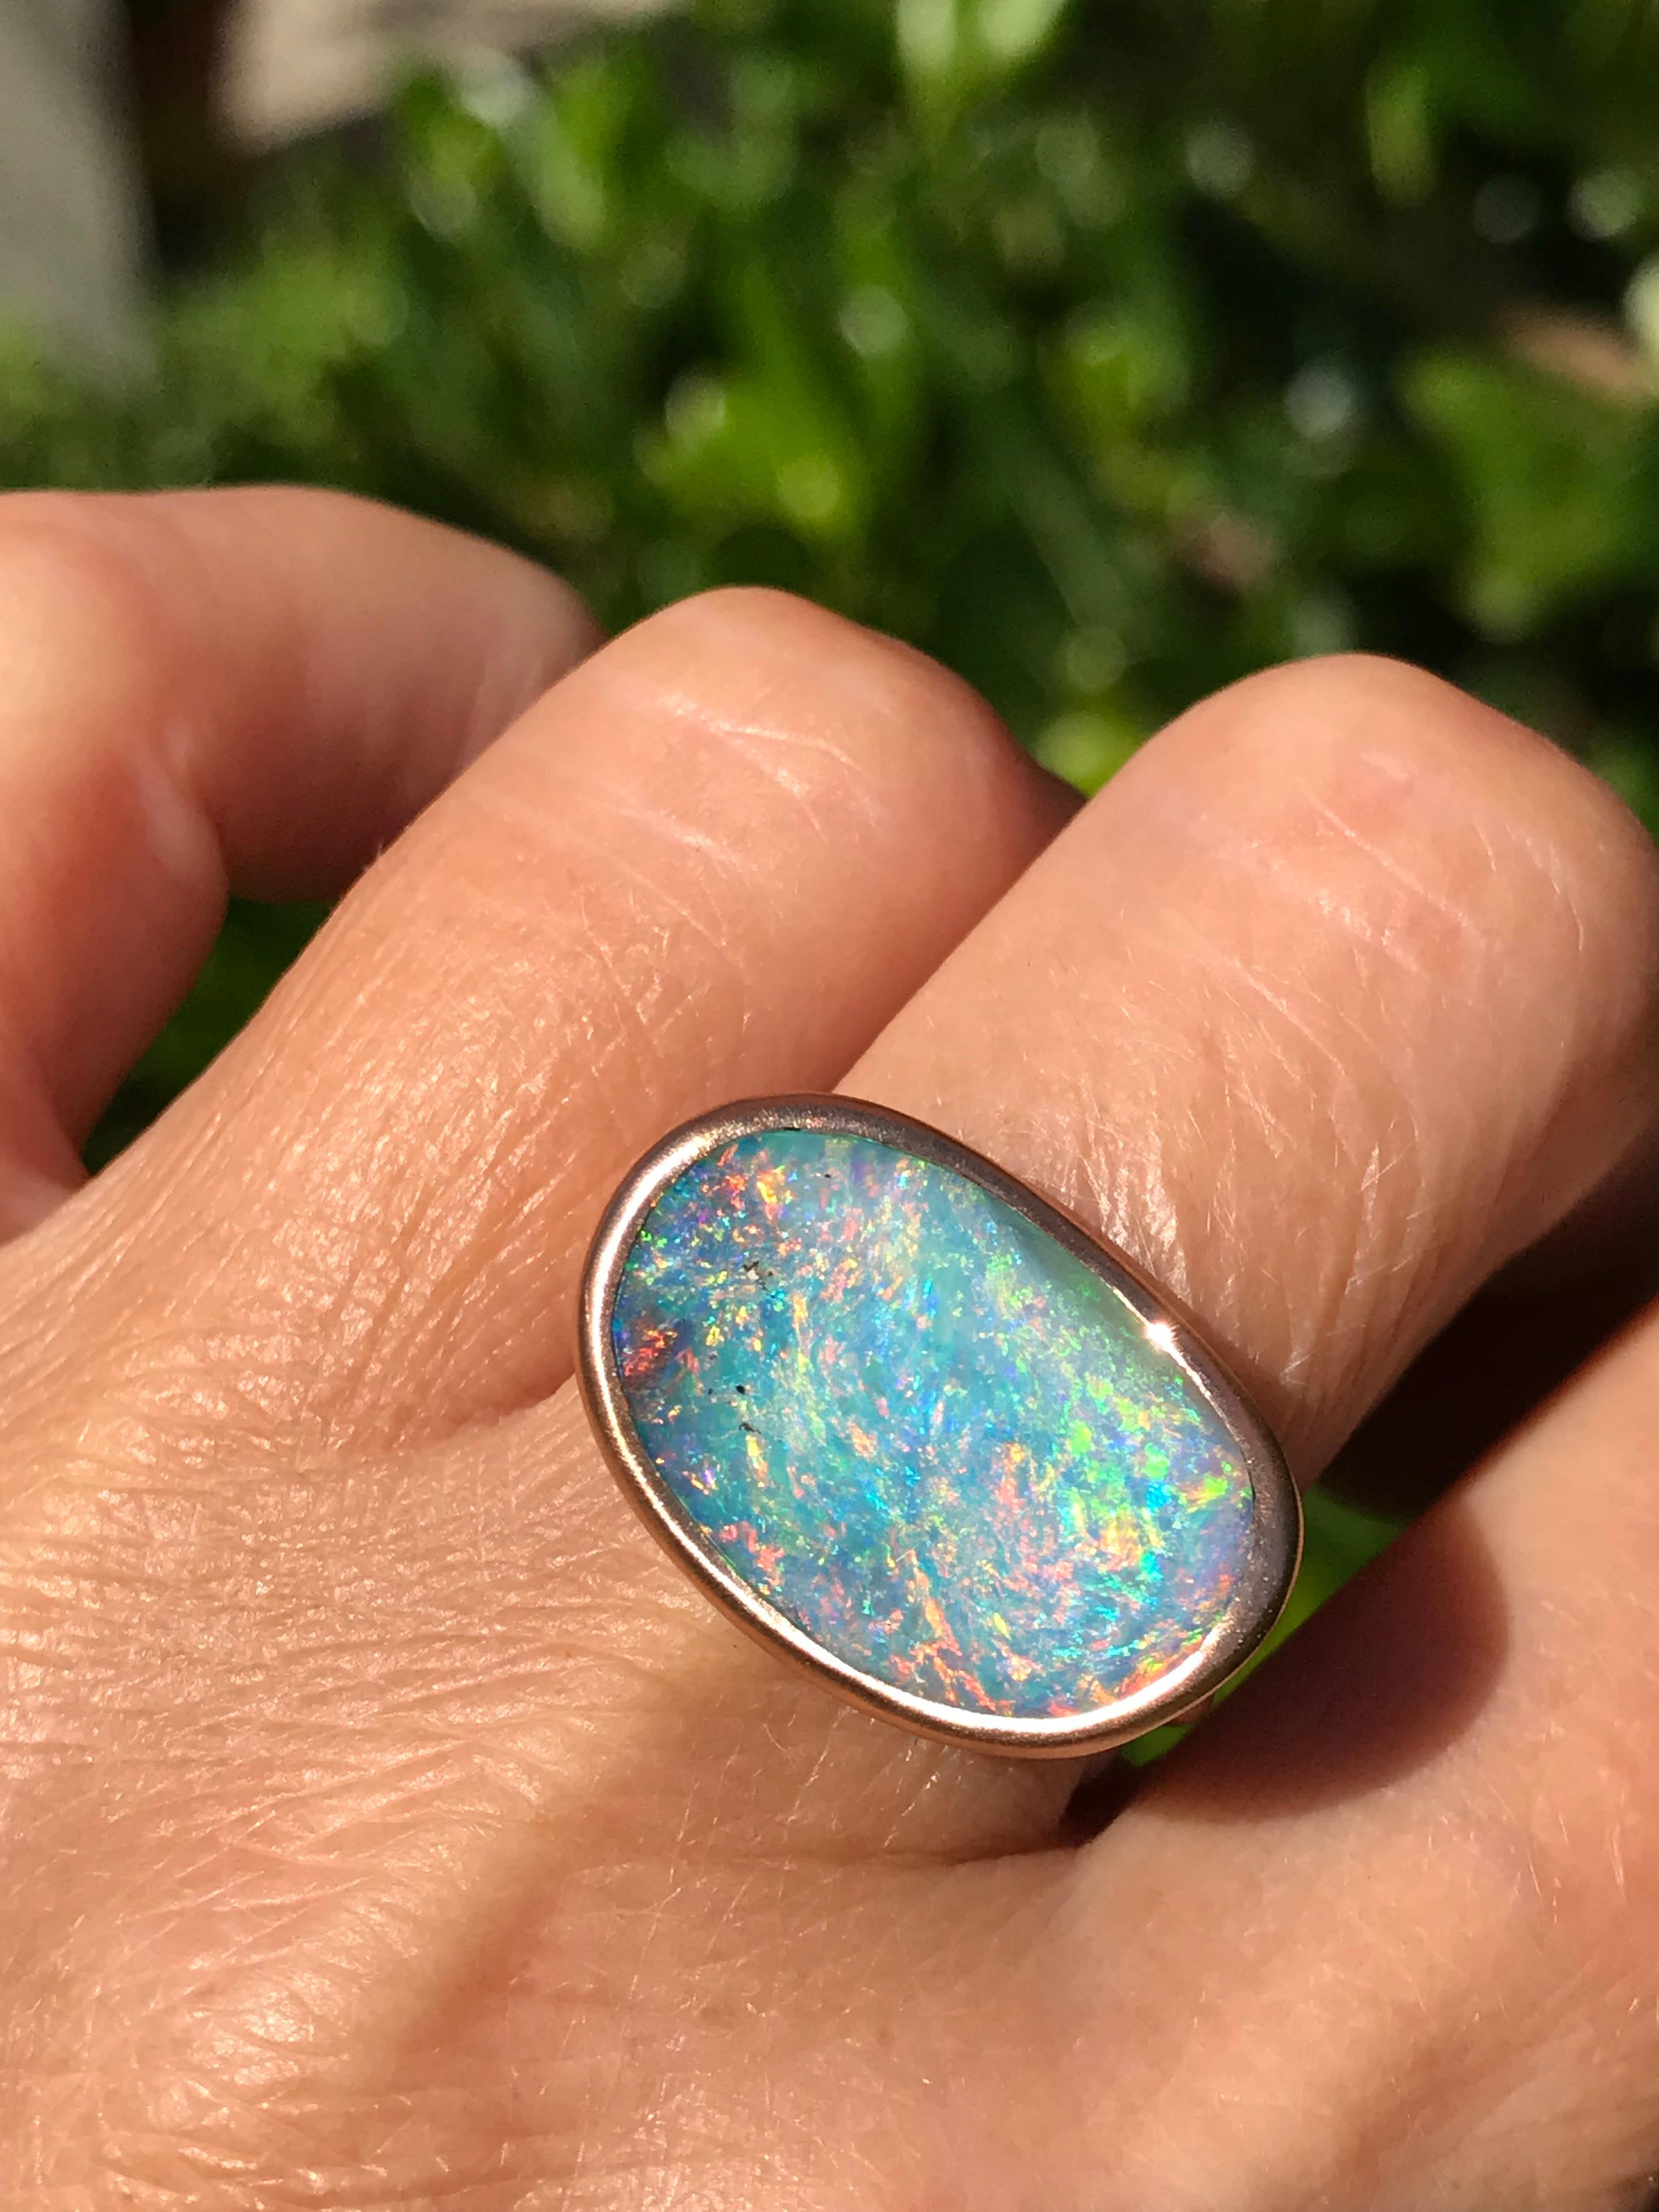 Dalben Design 18k Roségold satiniert Ring mit einem  9,7 Karat in Lünettenfassung, organische Form, prächtiger australischer Boulder-Opal aus einer Mine in Queensland. 
Der australische Opal hat blaue, rosa und grüne Flecken.
Ringgröße US  7 1/4-  -